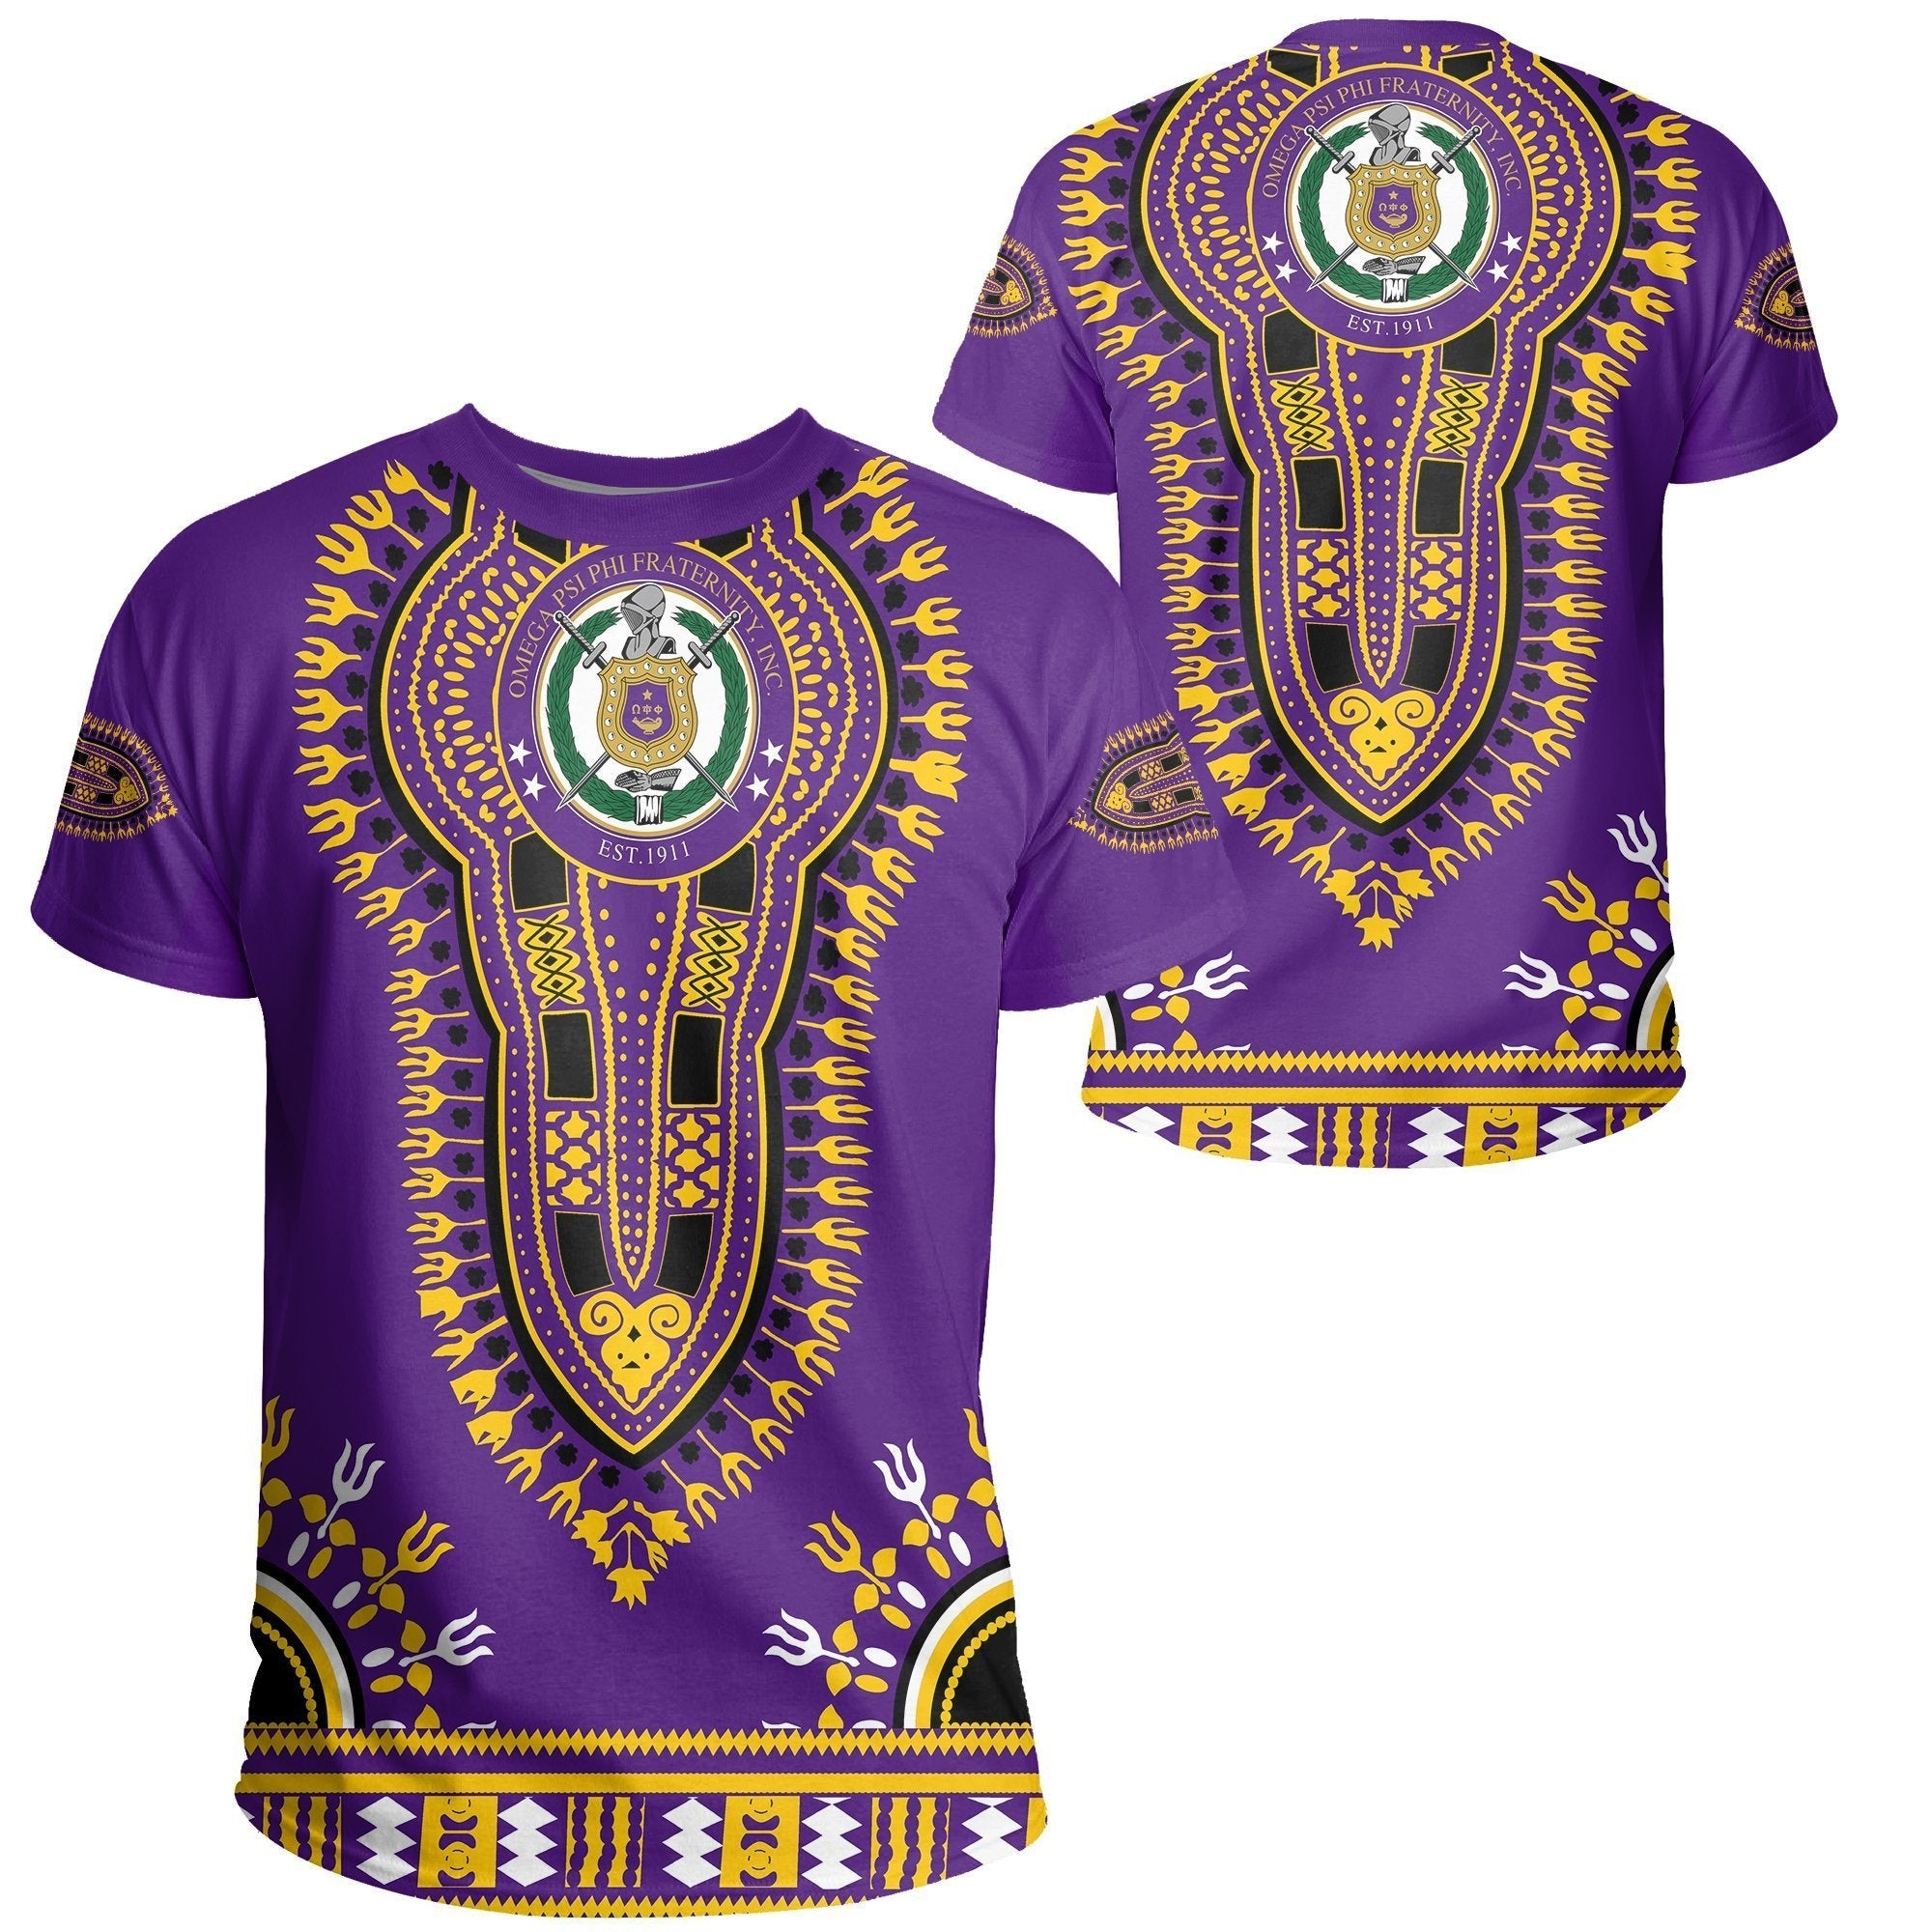 Wonderprint T-Shirt – Omega Psi Phi Dashiki Wonderprint T-Shirt